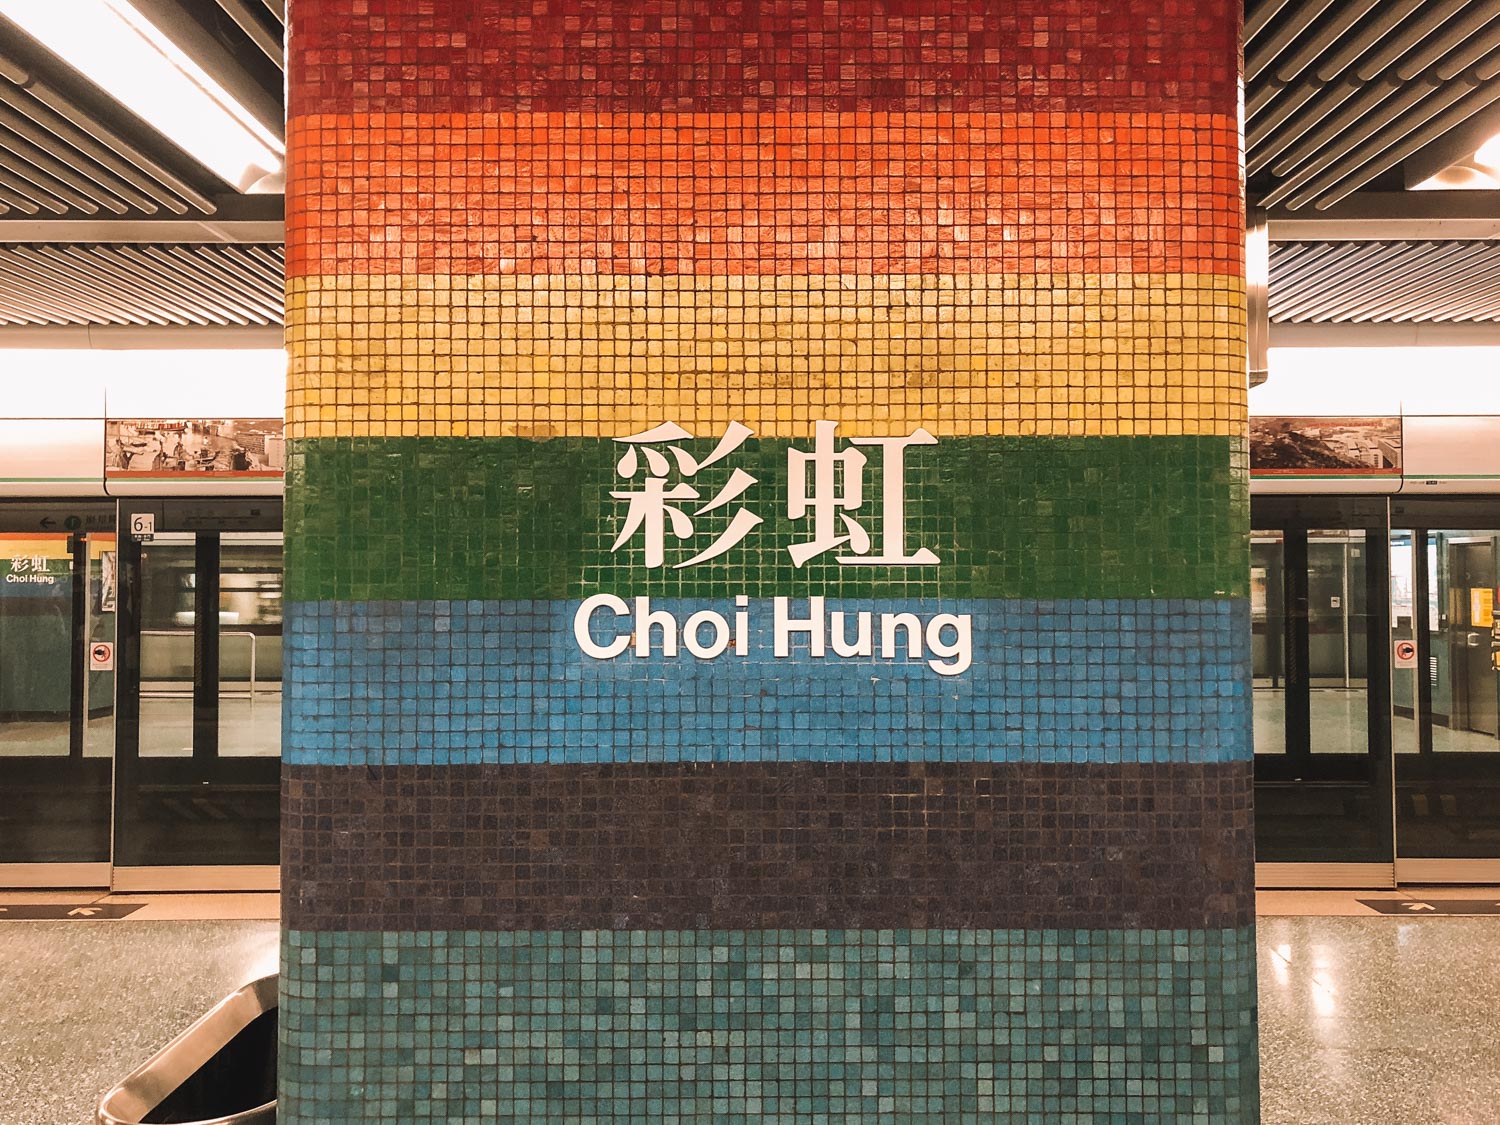 Sign in Hong Kong